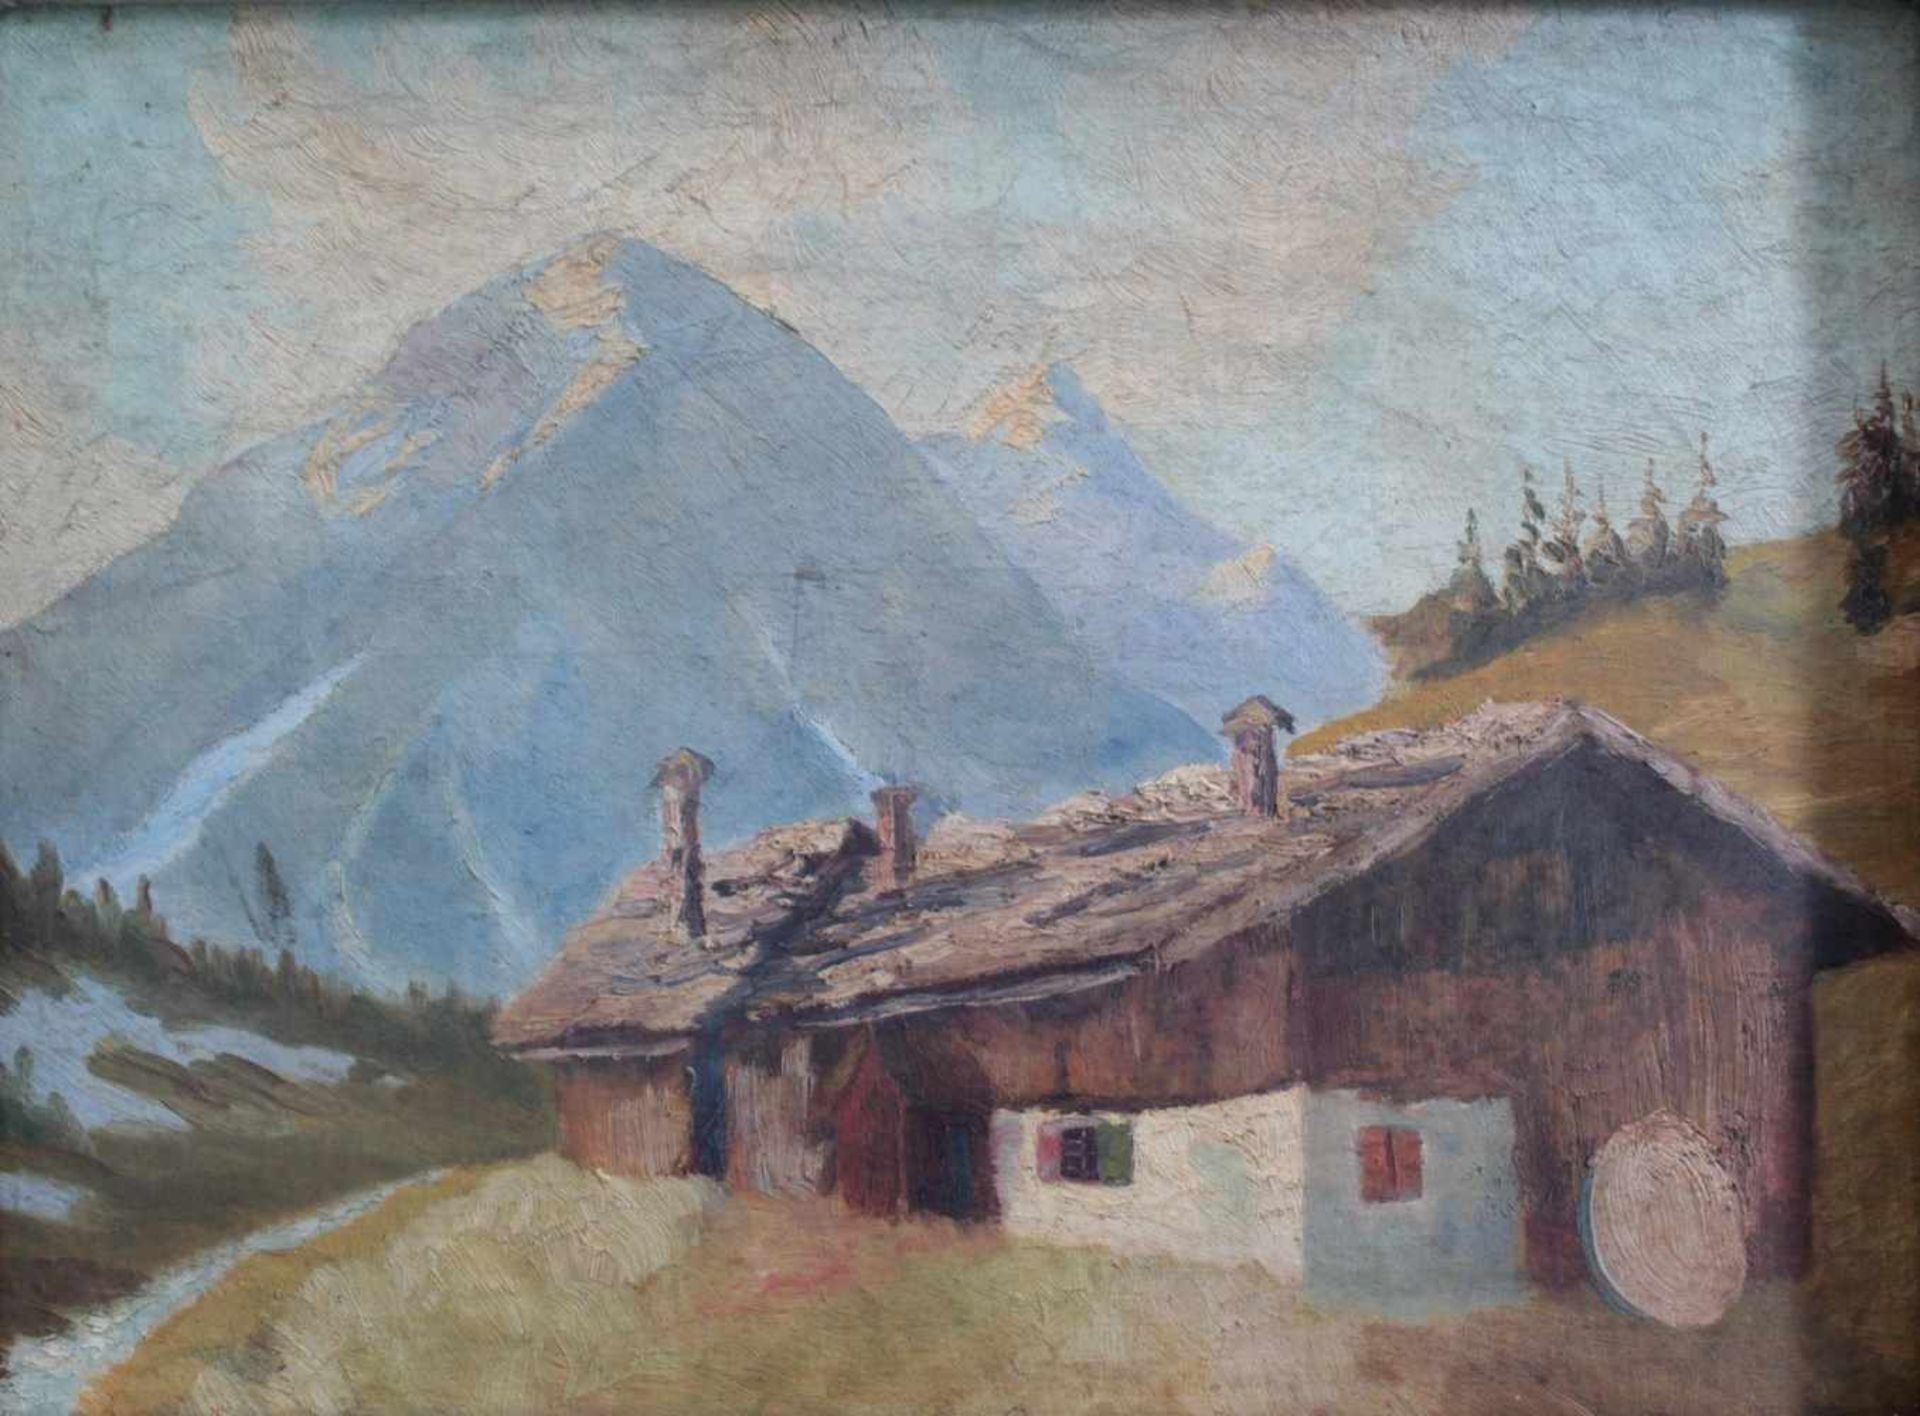 Brutscher, A., Künstler des 20. Jh. tätig in Wangen, "Kapelle im Gebirge"Öl auf Leinwand gemalt, - Bild 5 aus 5